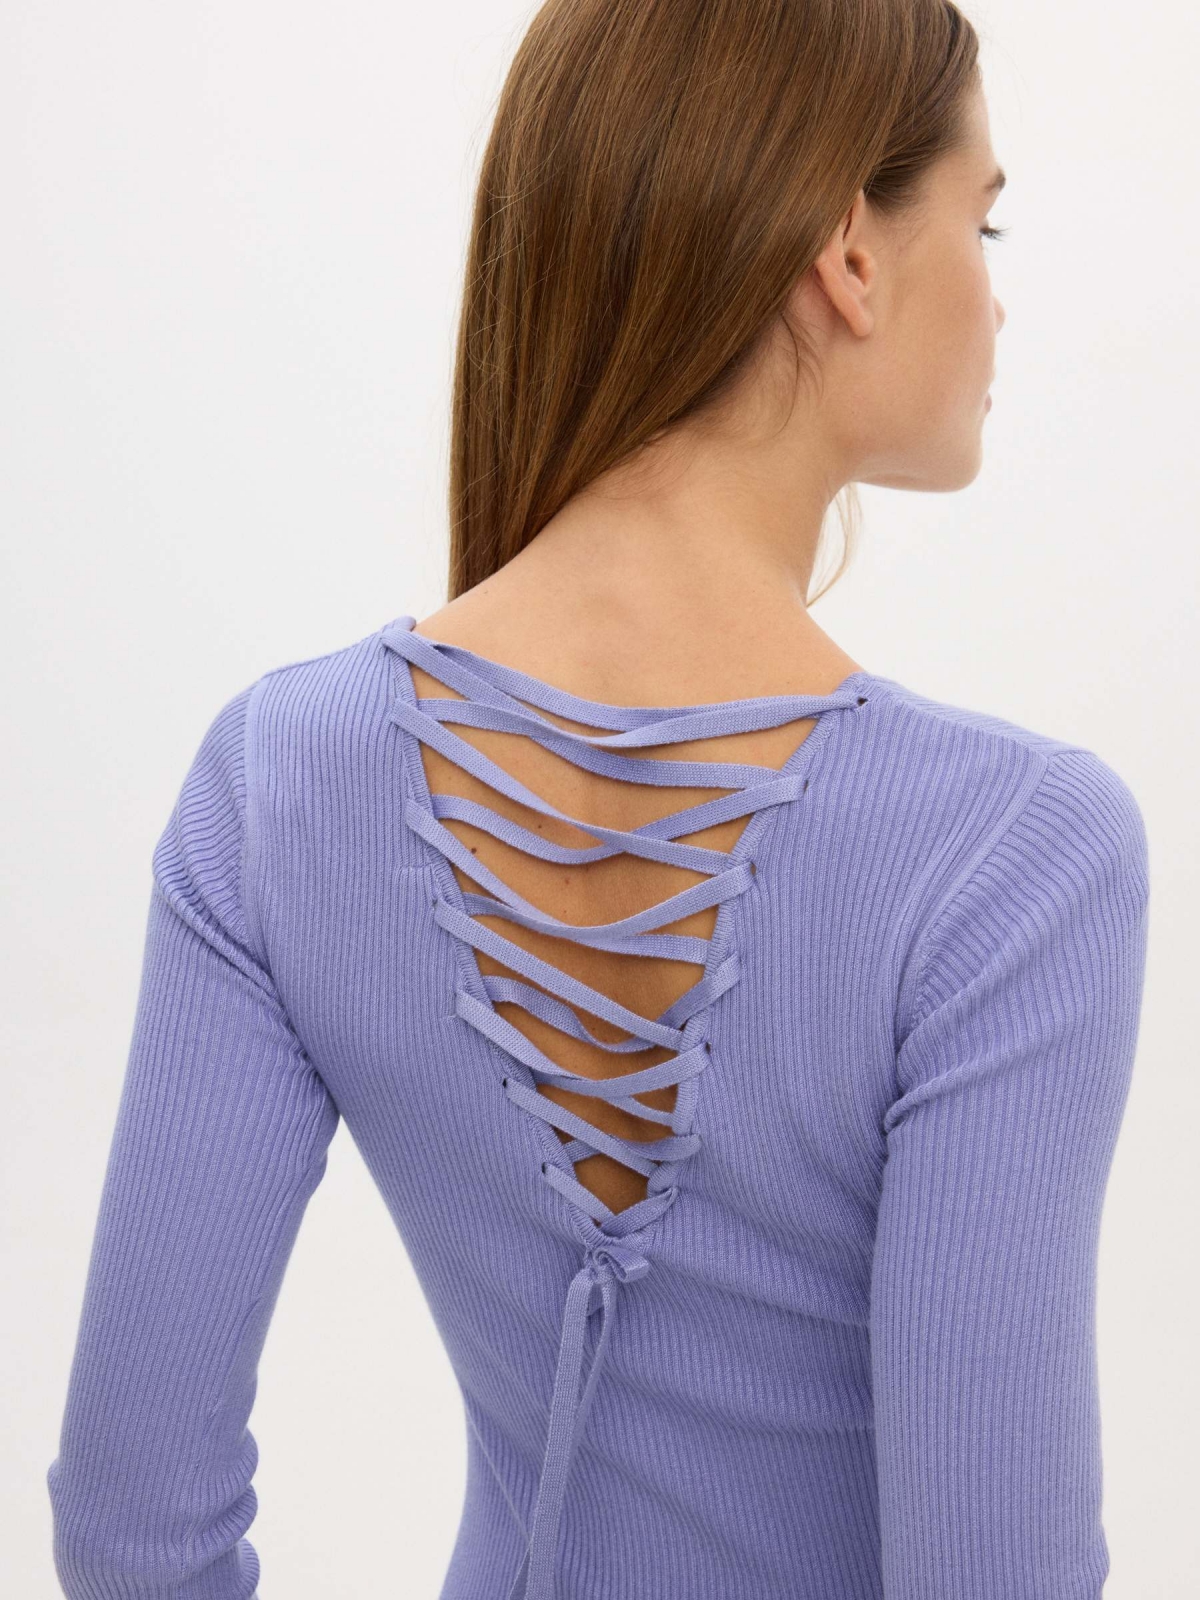 Vestido midi rib espalda lace up violeta vista detalle